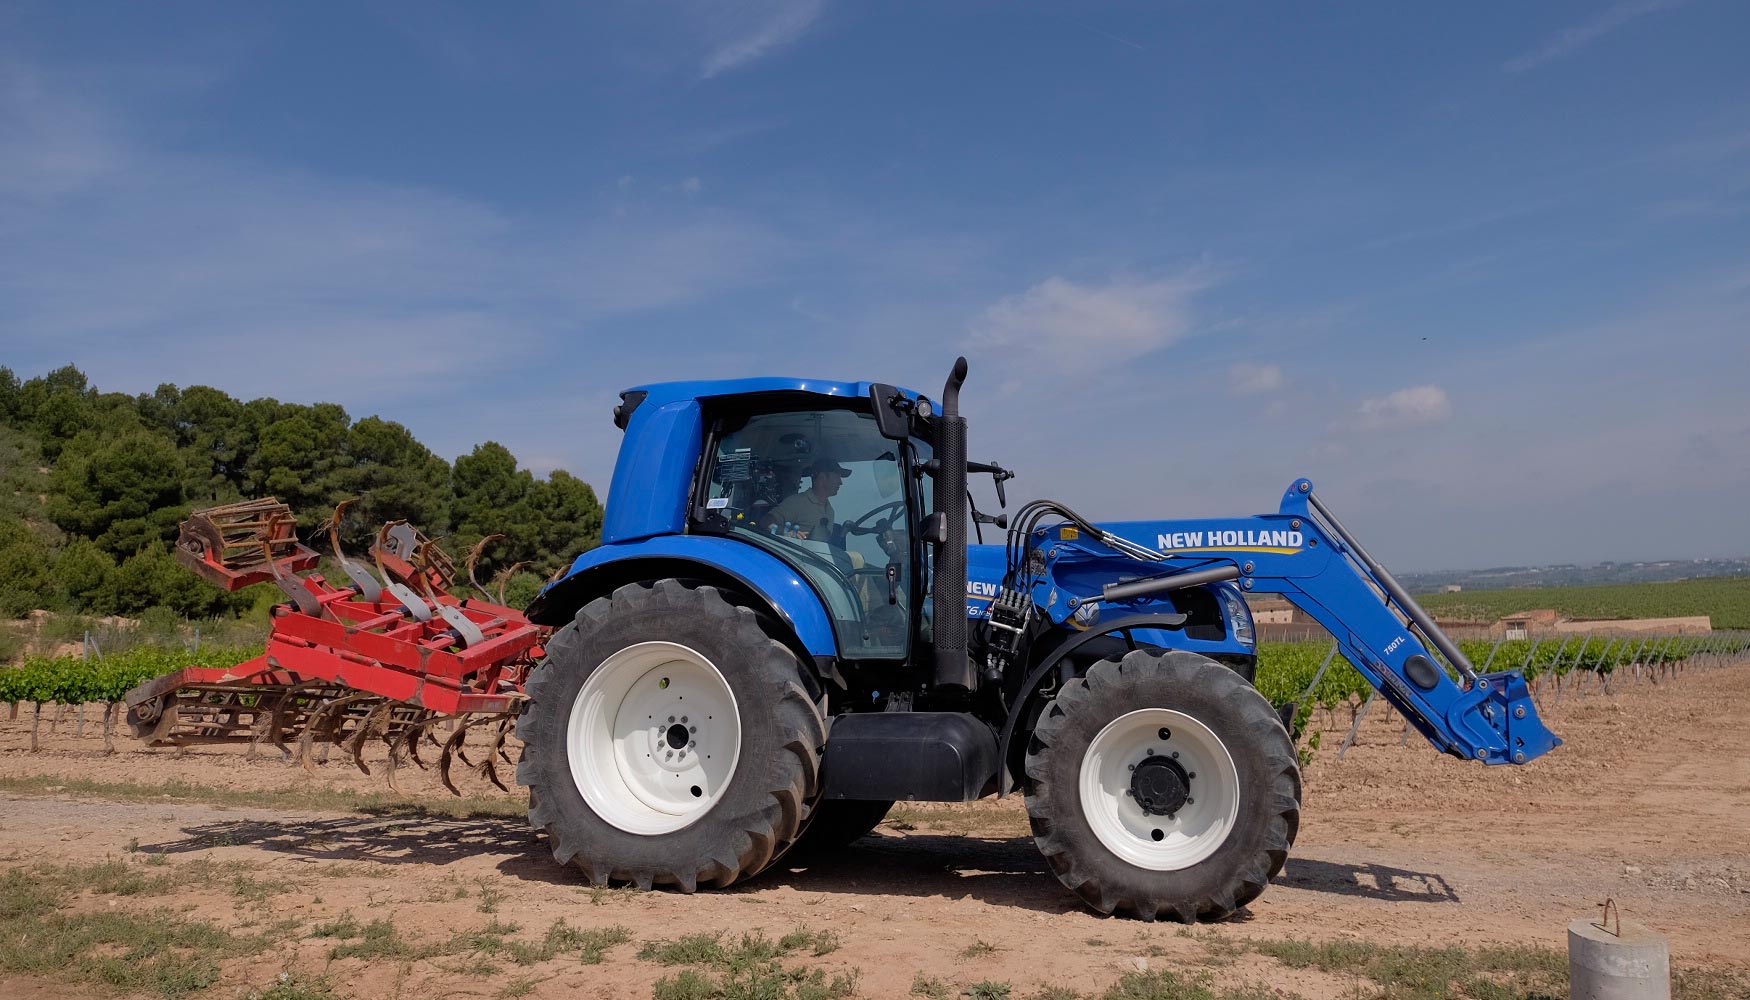 El tractor propulsado por metano ofrece importantes ventajas medioambientales frente a uno convencional...